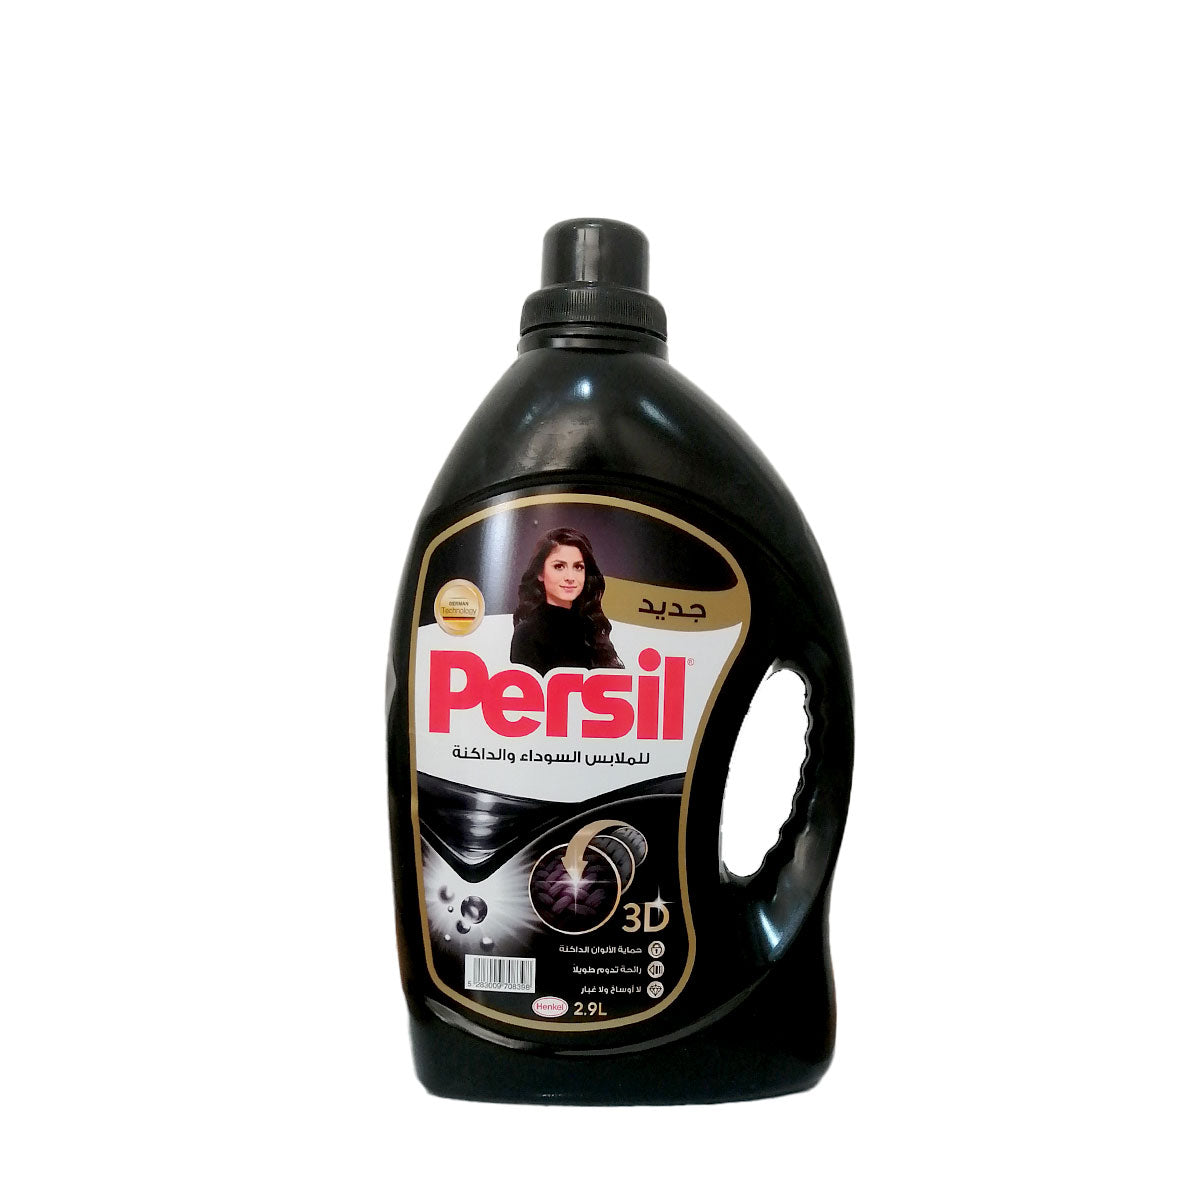 Persil For Dark Cloths 2.9 L  برسيل منظف سائل للملابس السوداء والداكنة 2.9 لتر